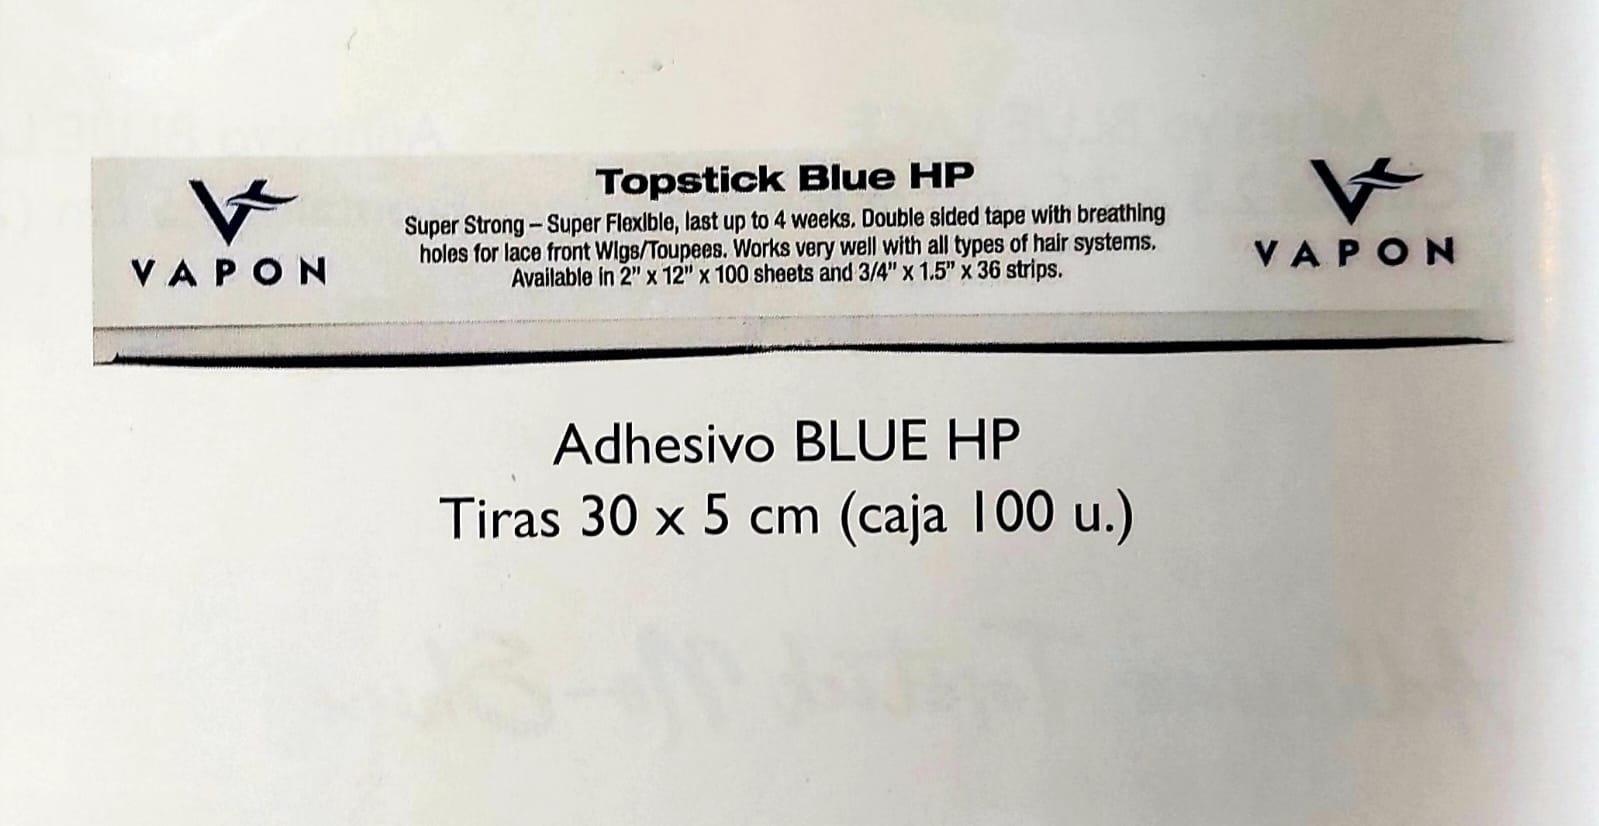 Adhesivo BLUE HP Tiras 30 x 5cm (Caixa de 100 u.)